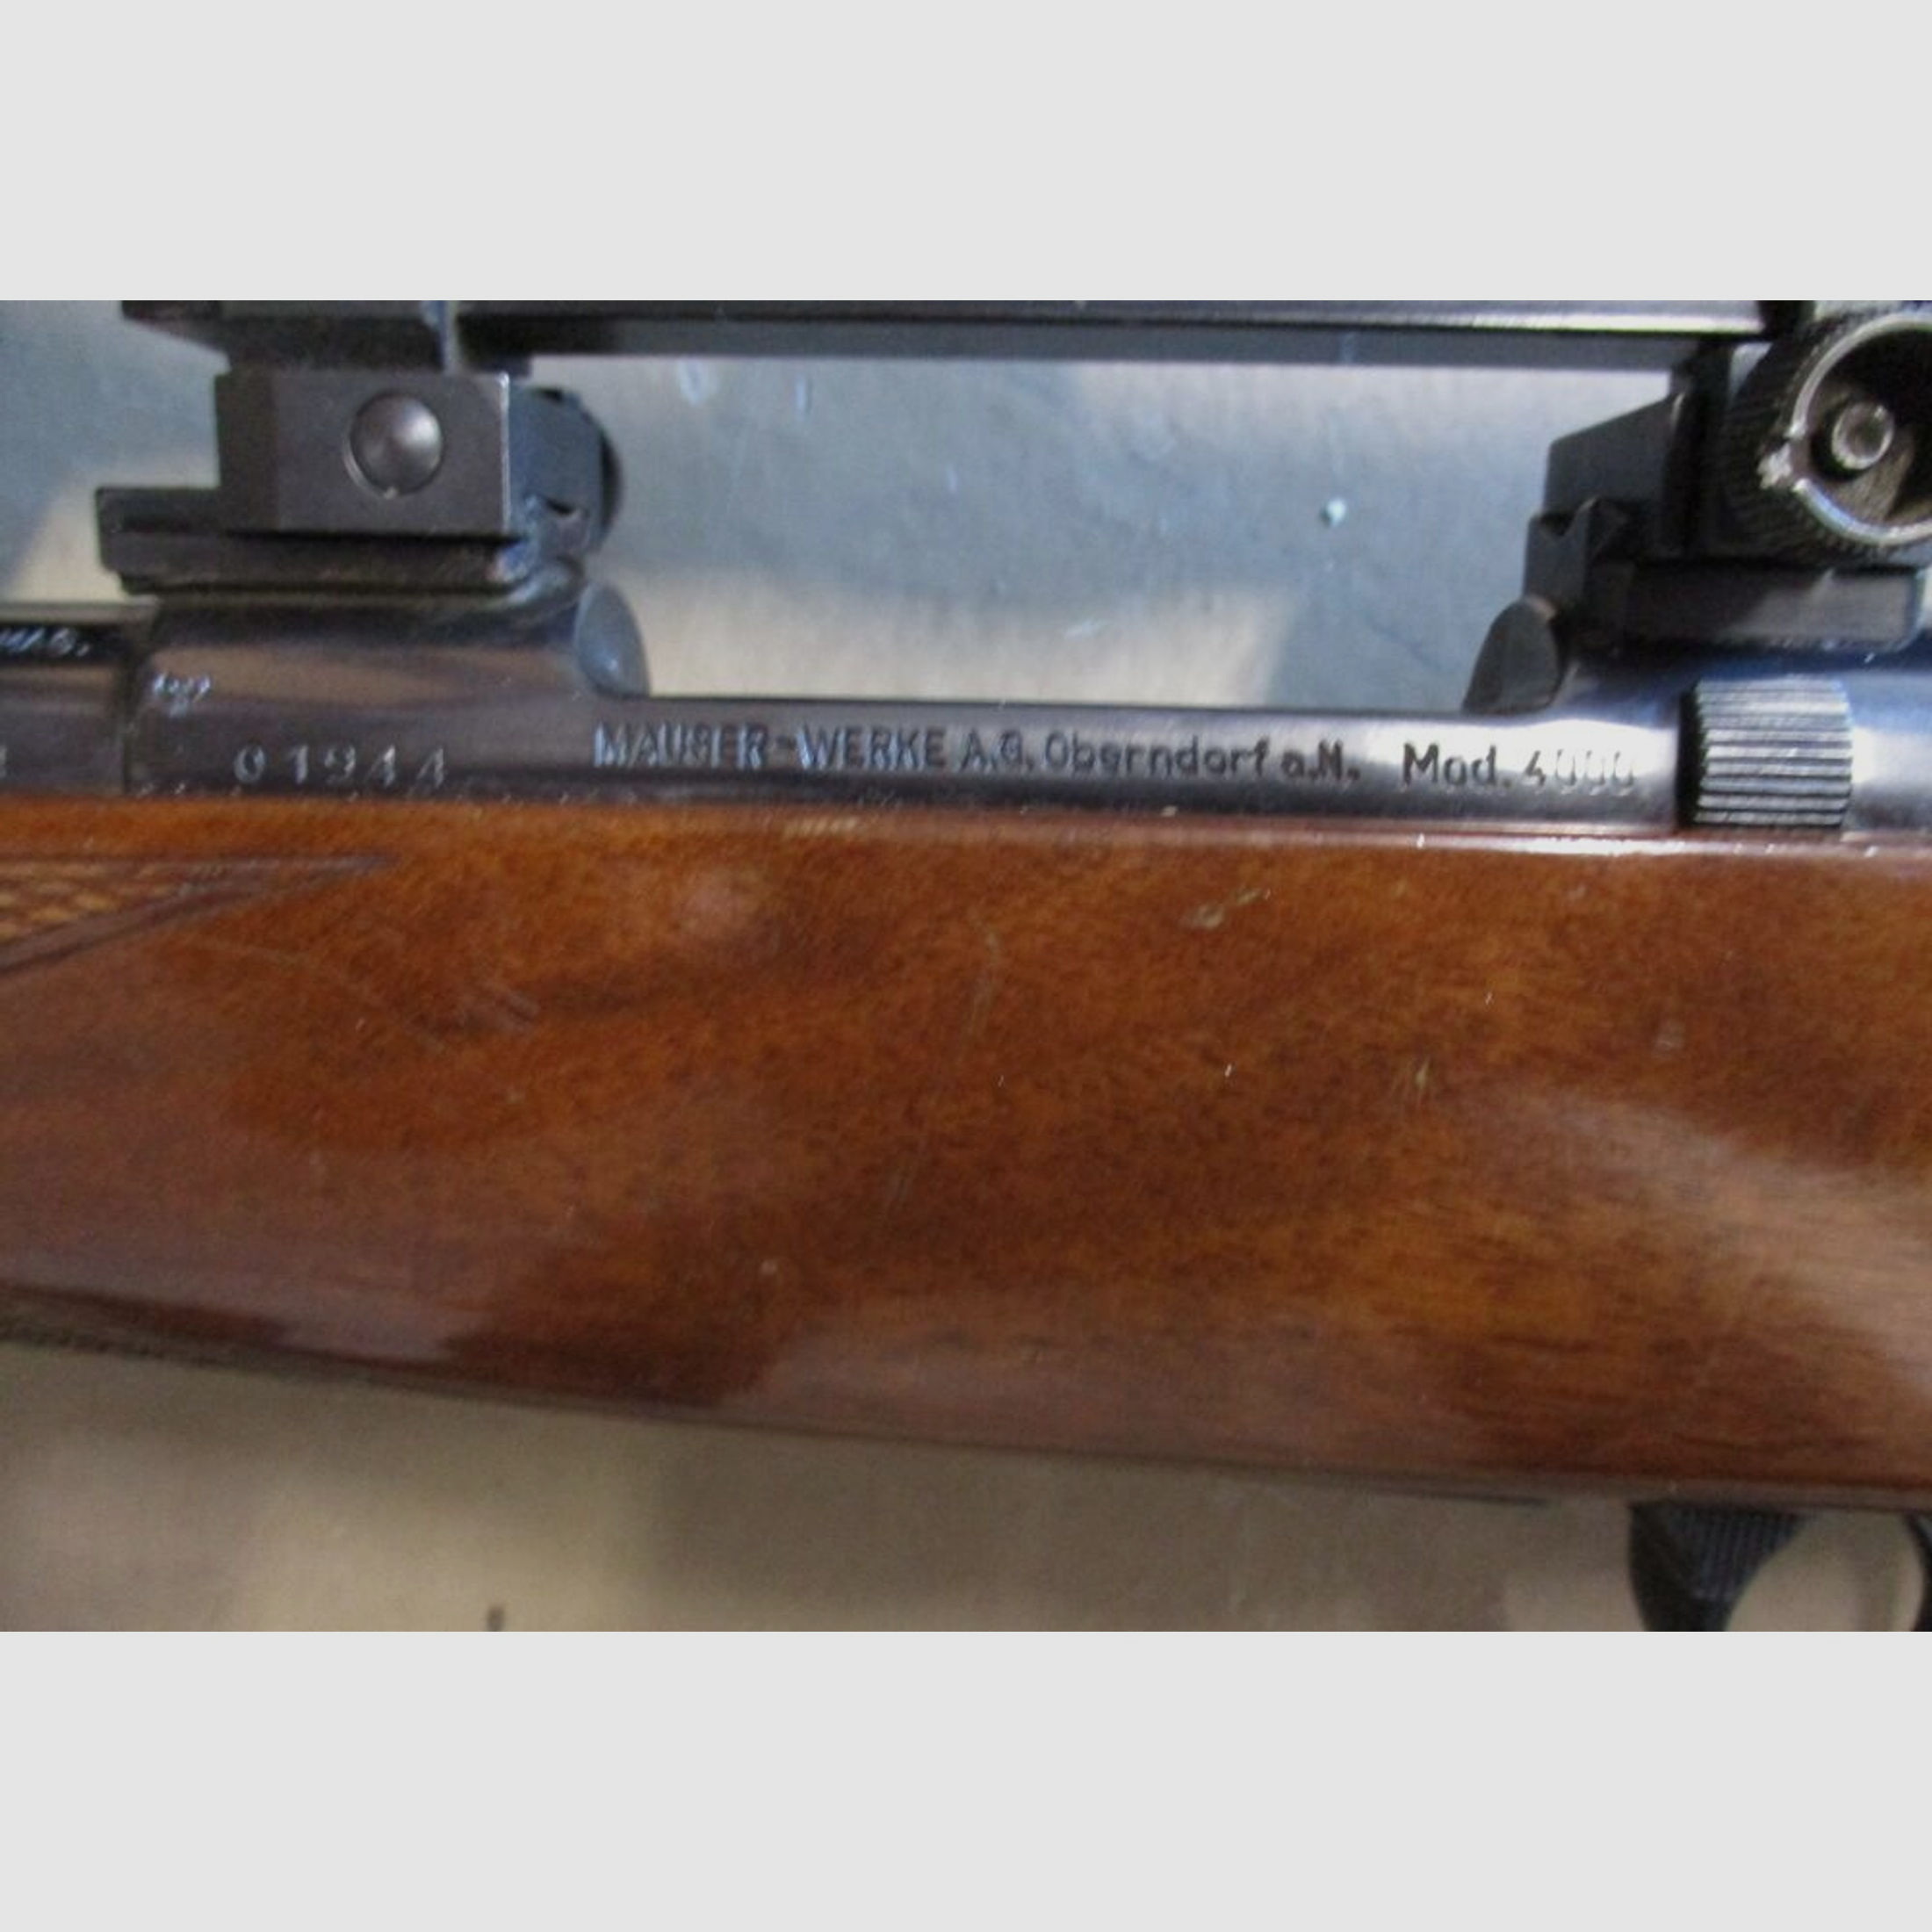 Repetierbüchse Mauser 4000 mit Zielfernrohr Tasco 6x40	 4000